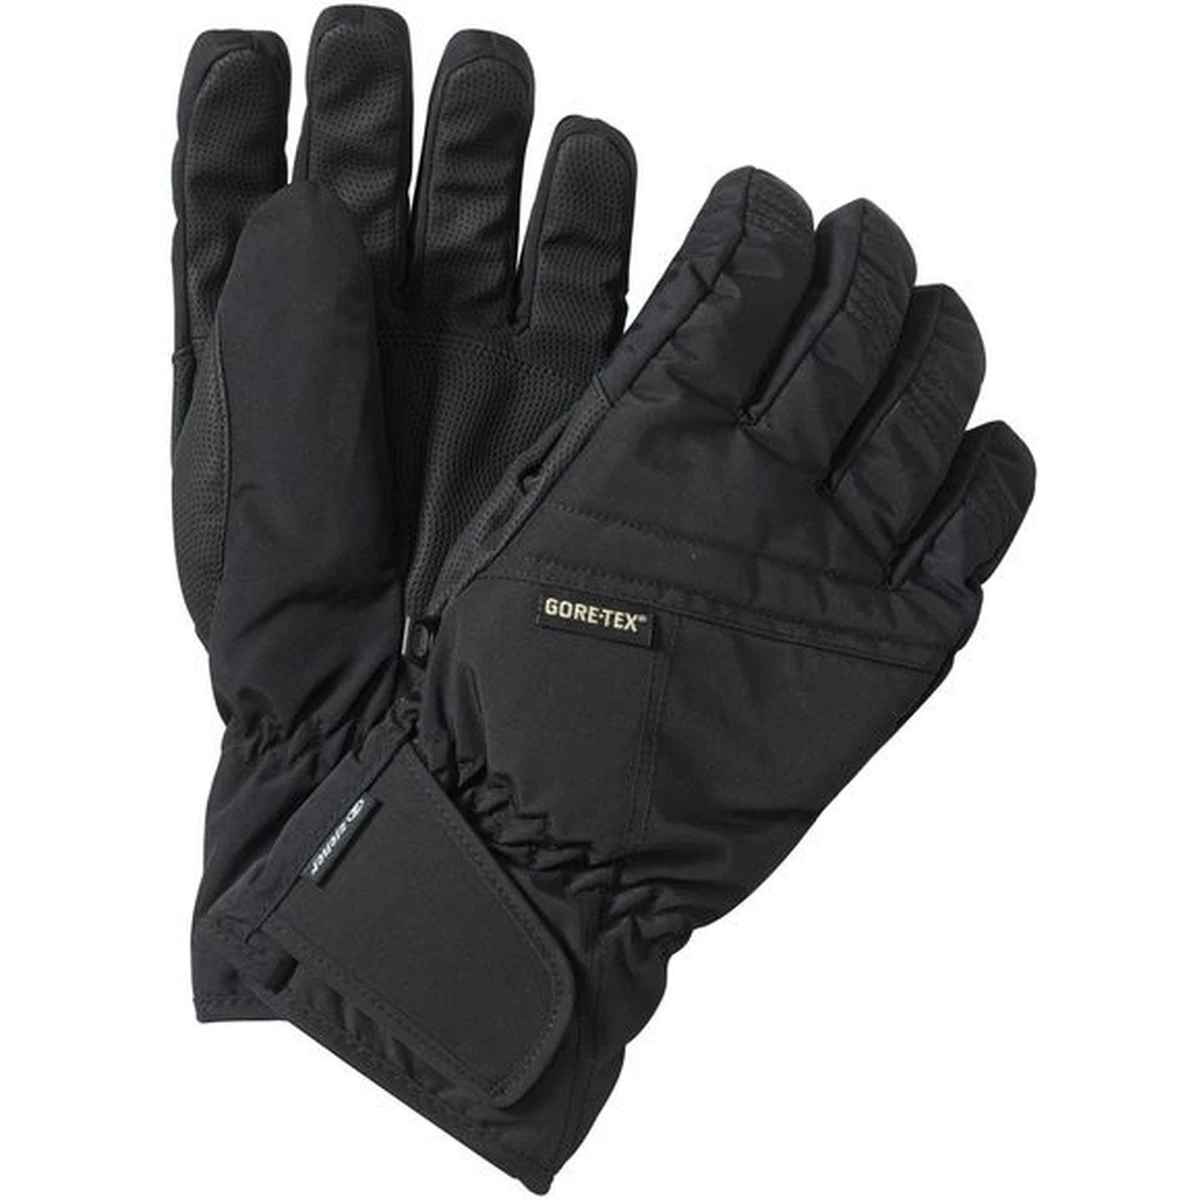 Ziener Lacop GTX Handschoen Senior Skihandschoenen - Handschoenen Wintersportkleding - Wintersport - Intersport van den Broek / Biggelaar